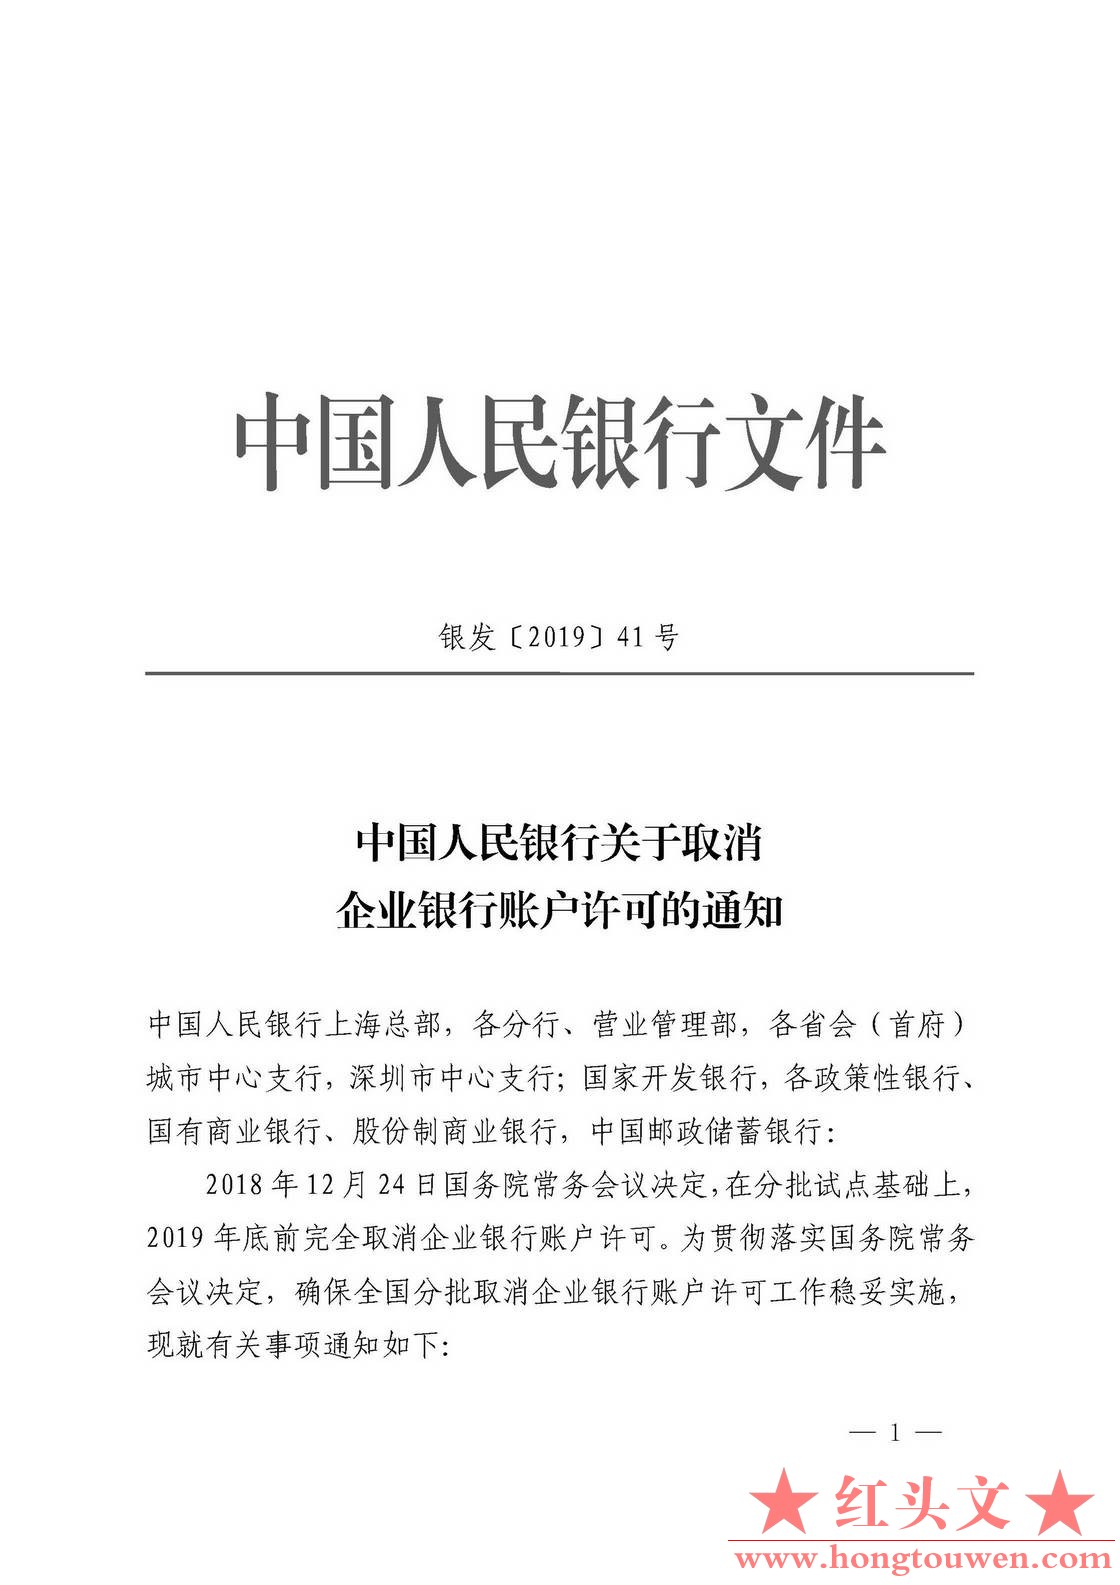 银发[2019]41号-中国人民银行关于取消企业银行账户许可的通知_页面_01.jpg.jpg